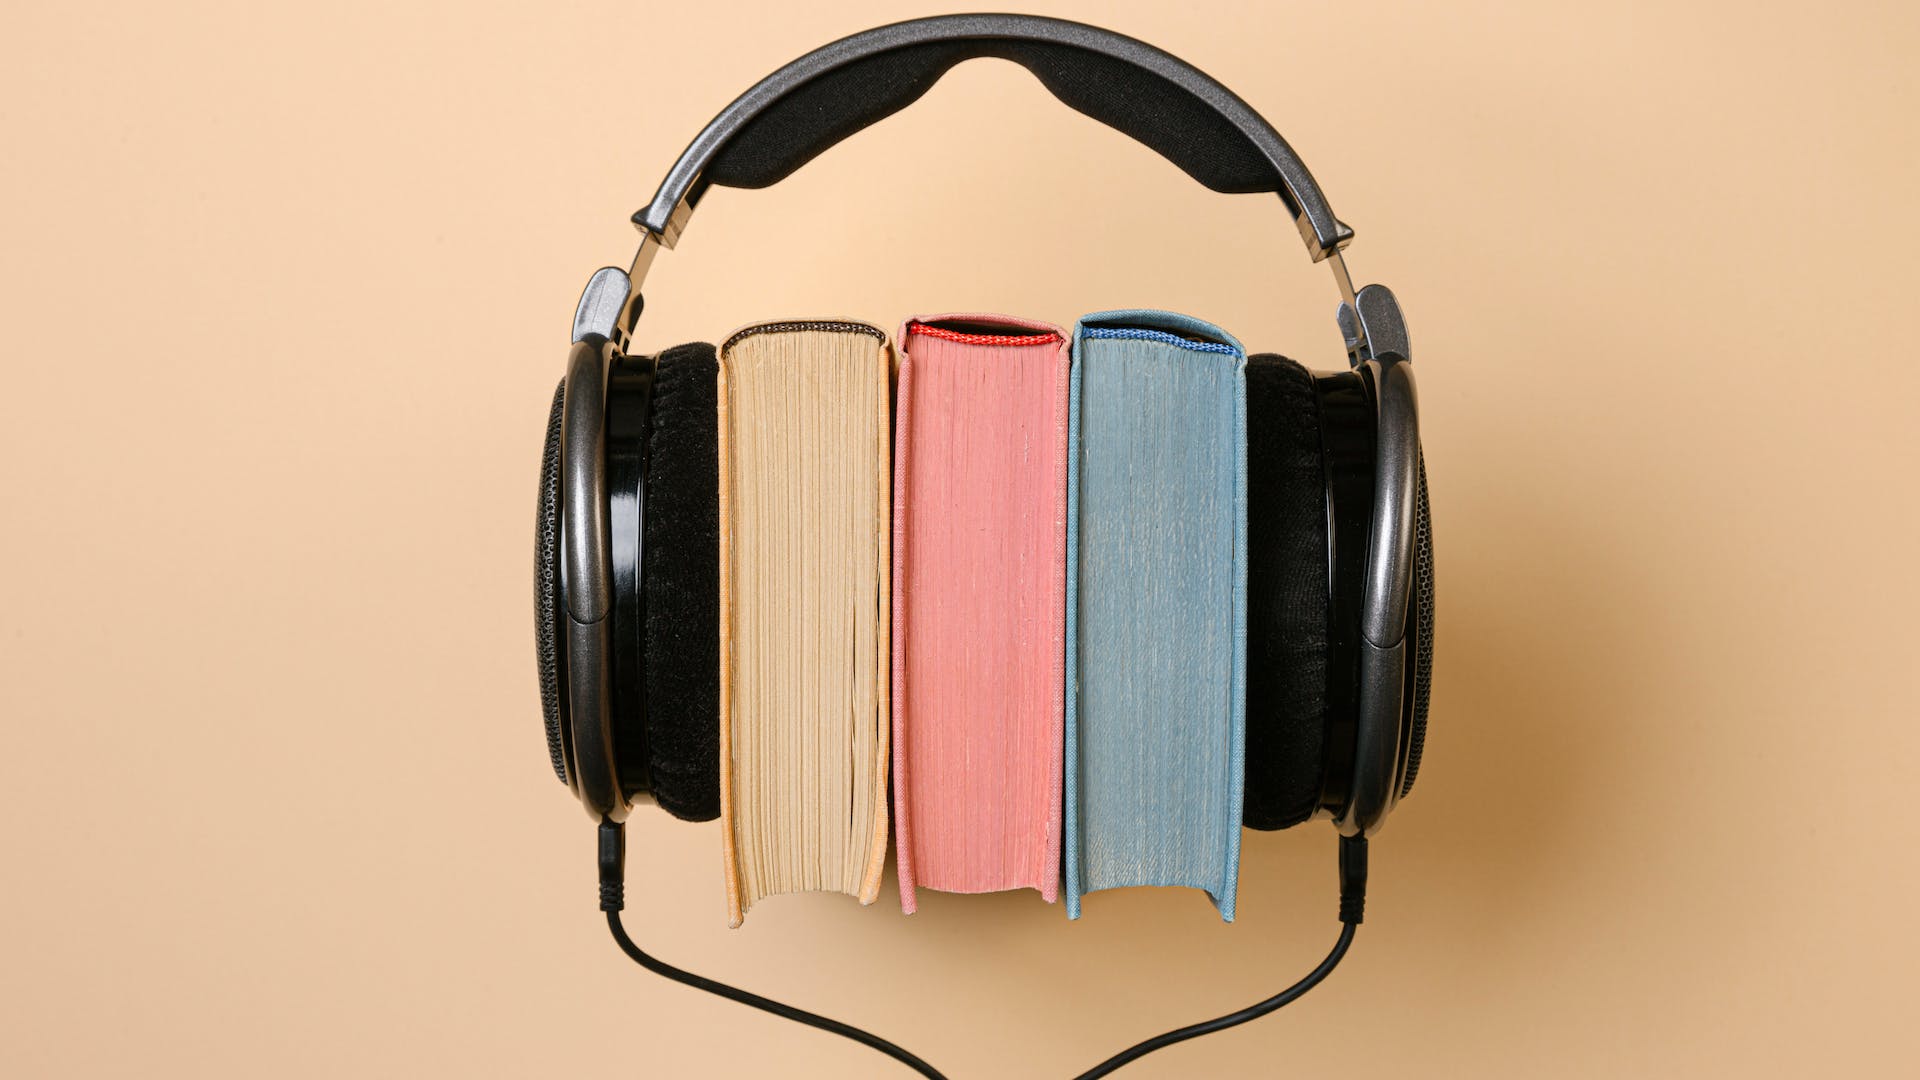 Học Tiếng Anh Qua Audio Bí Quyết Hiệu Quả Và Thú Vị